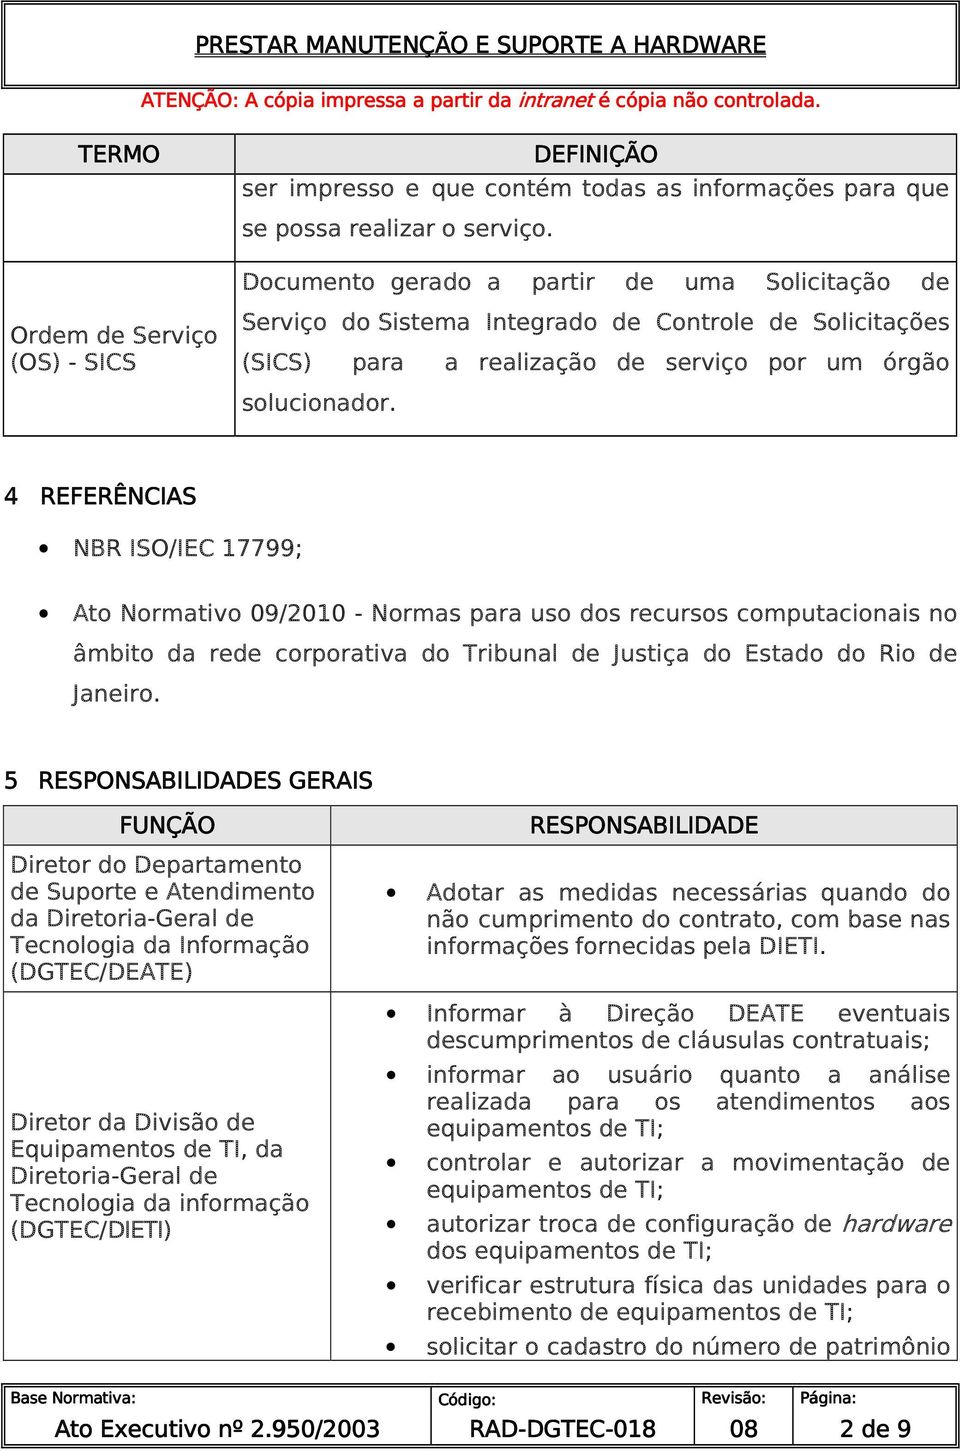 4 REFERÊNCIAS NBR ISO/IEC 17799; Ato Normativo 09/2010 - Normas para uso dos recursos computacionais no âmbito da rede corporativa do Tribunal de Justiça do Estado do Rio de Janeiro.